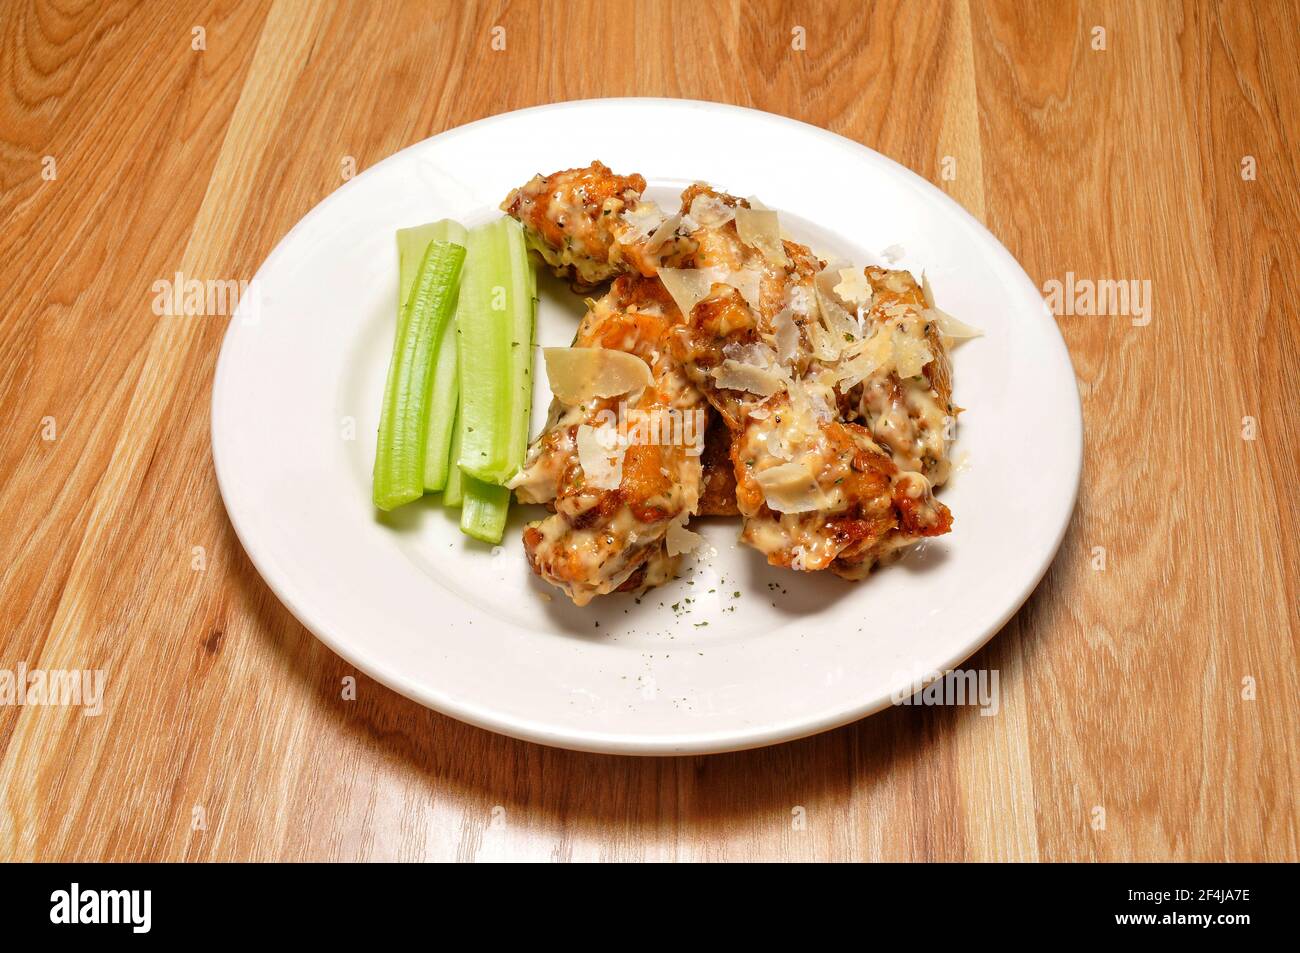 Köstliche amerikanische Gericht als Knoblauch Parmesan Chicken Wings bekannt Stockfoto